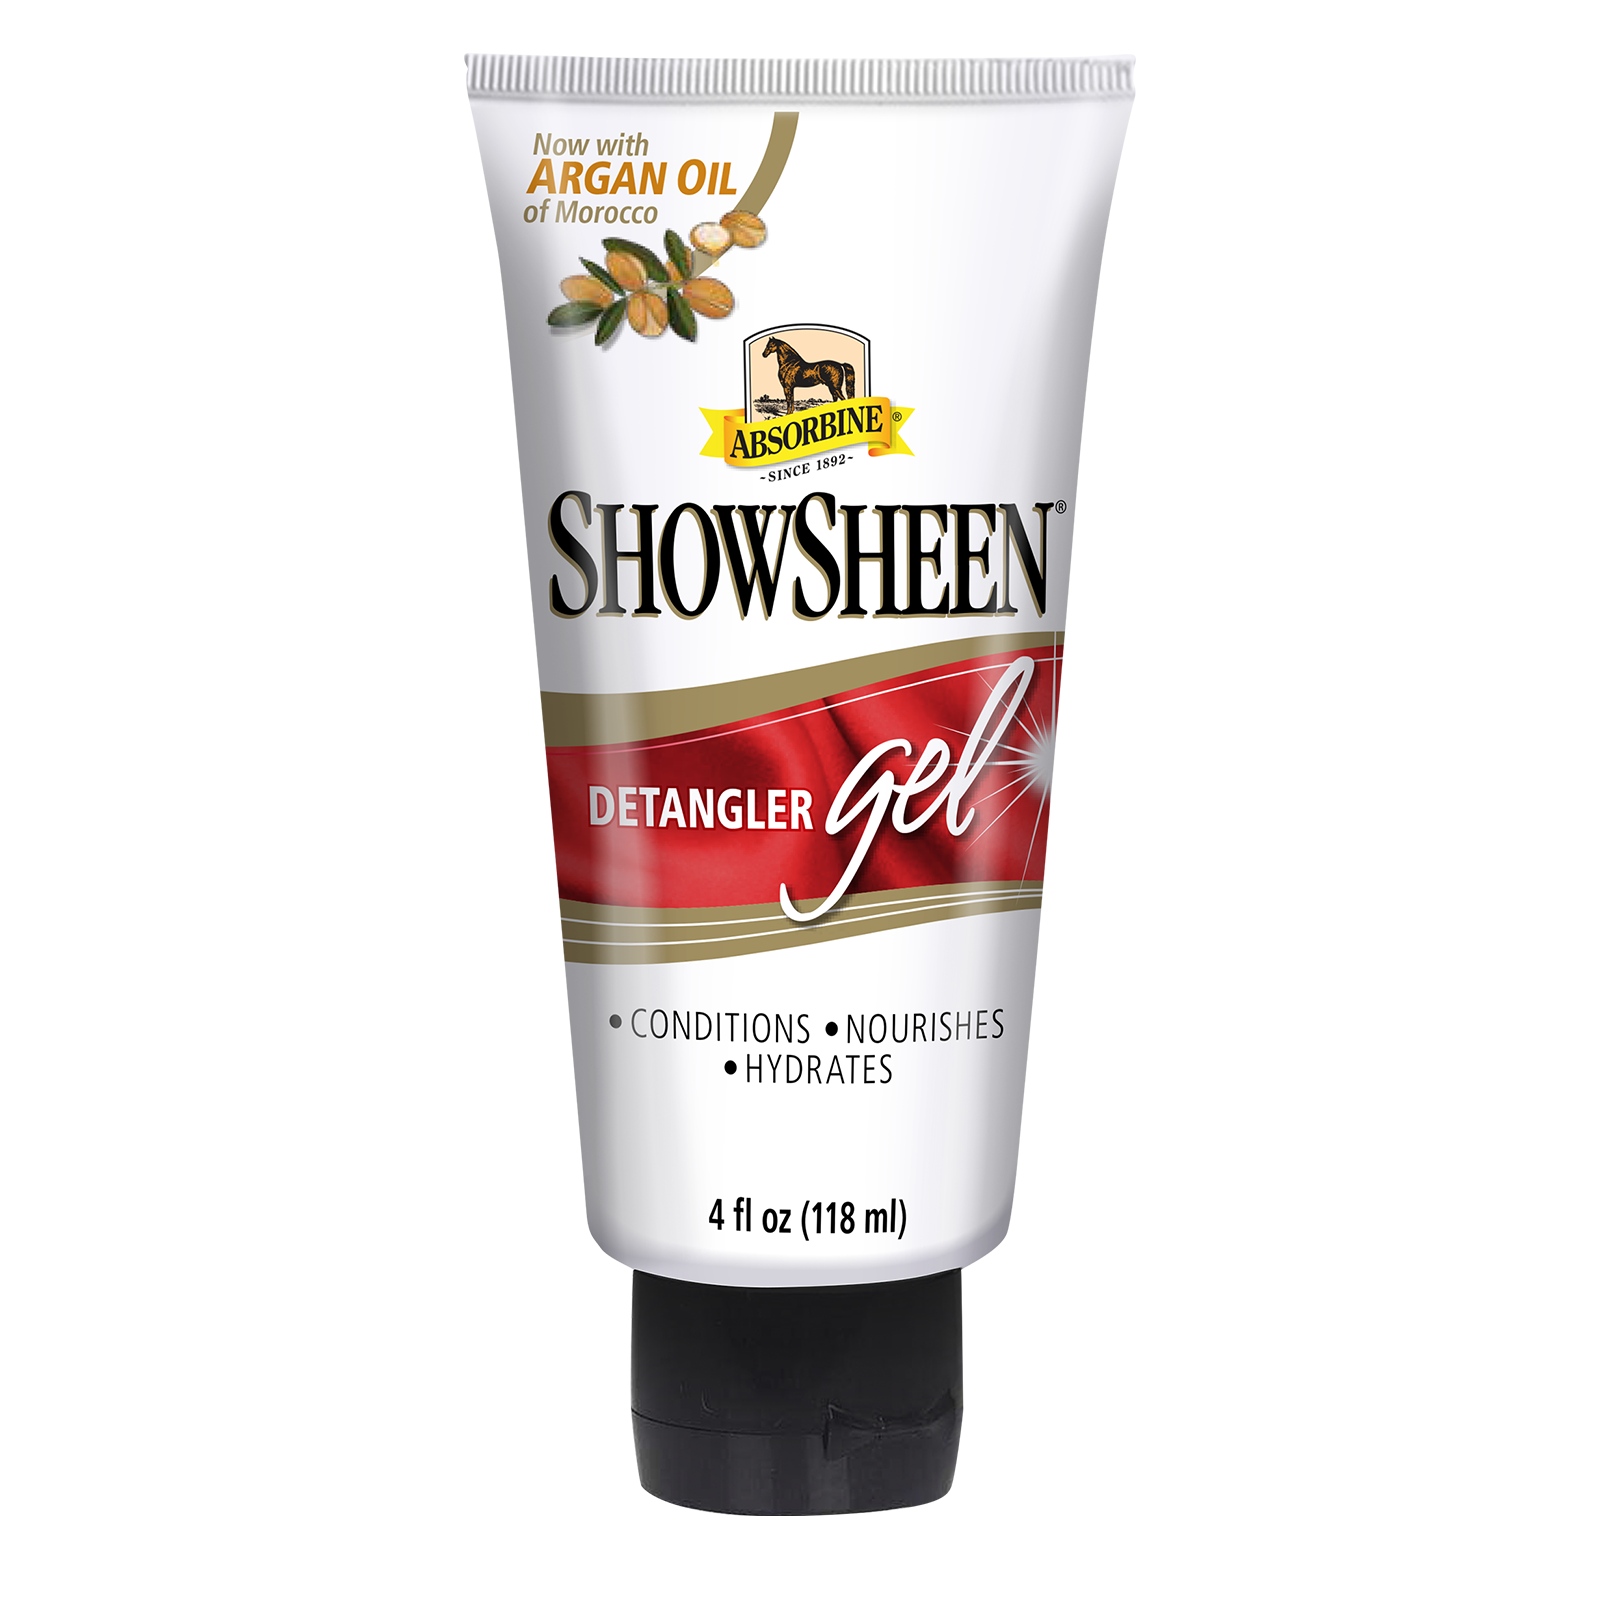 ShowSheen® Detangler Gel Skin & Coat Care absorbine   